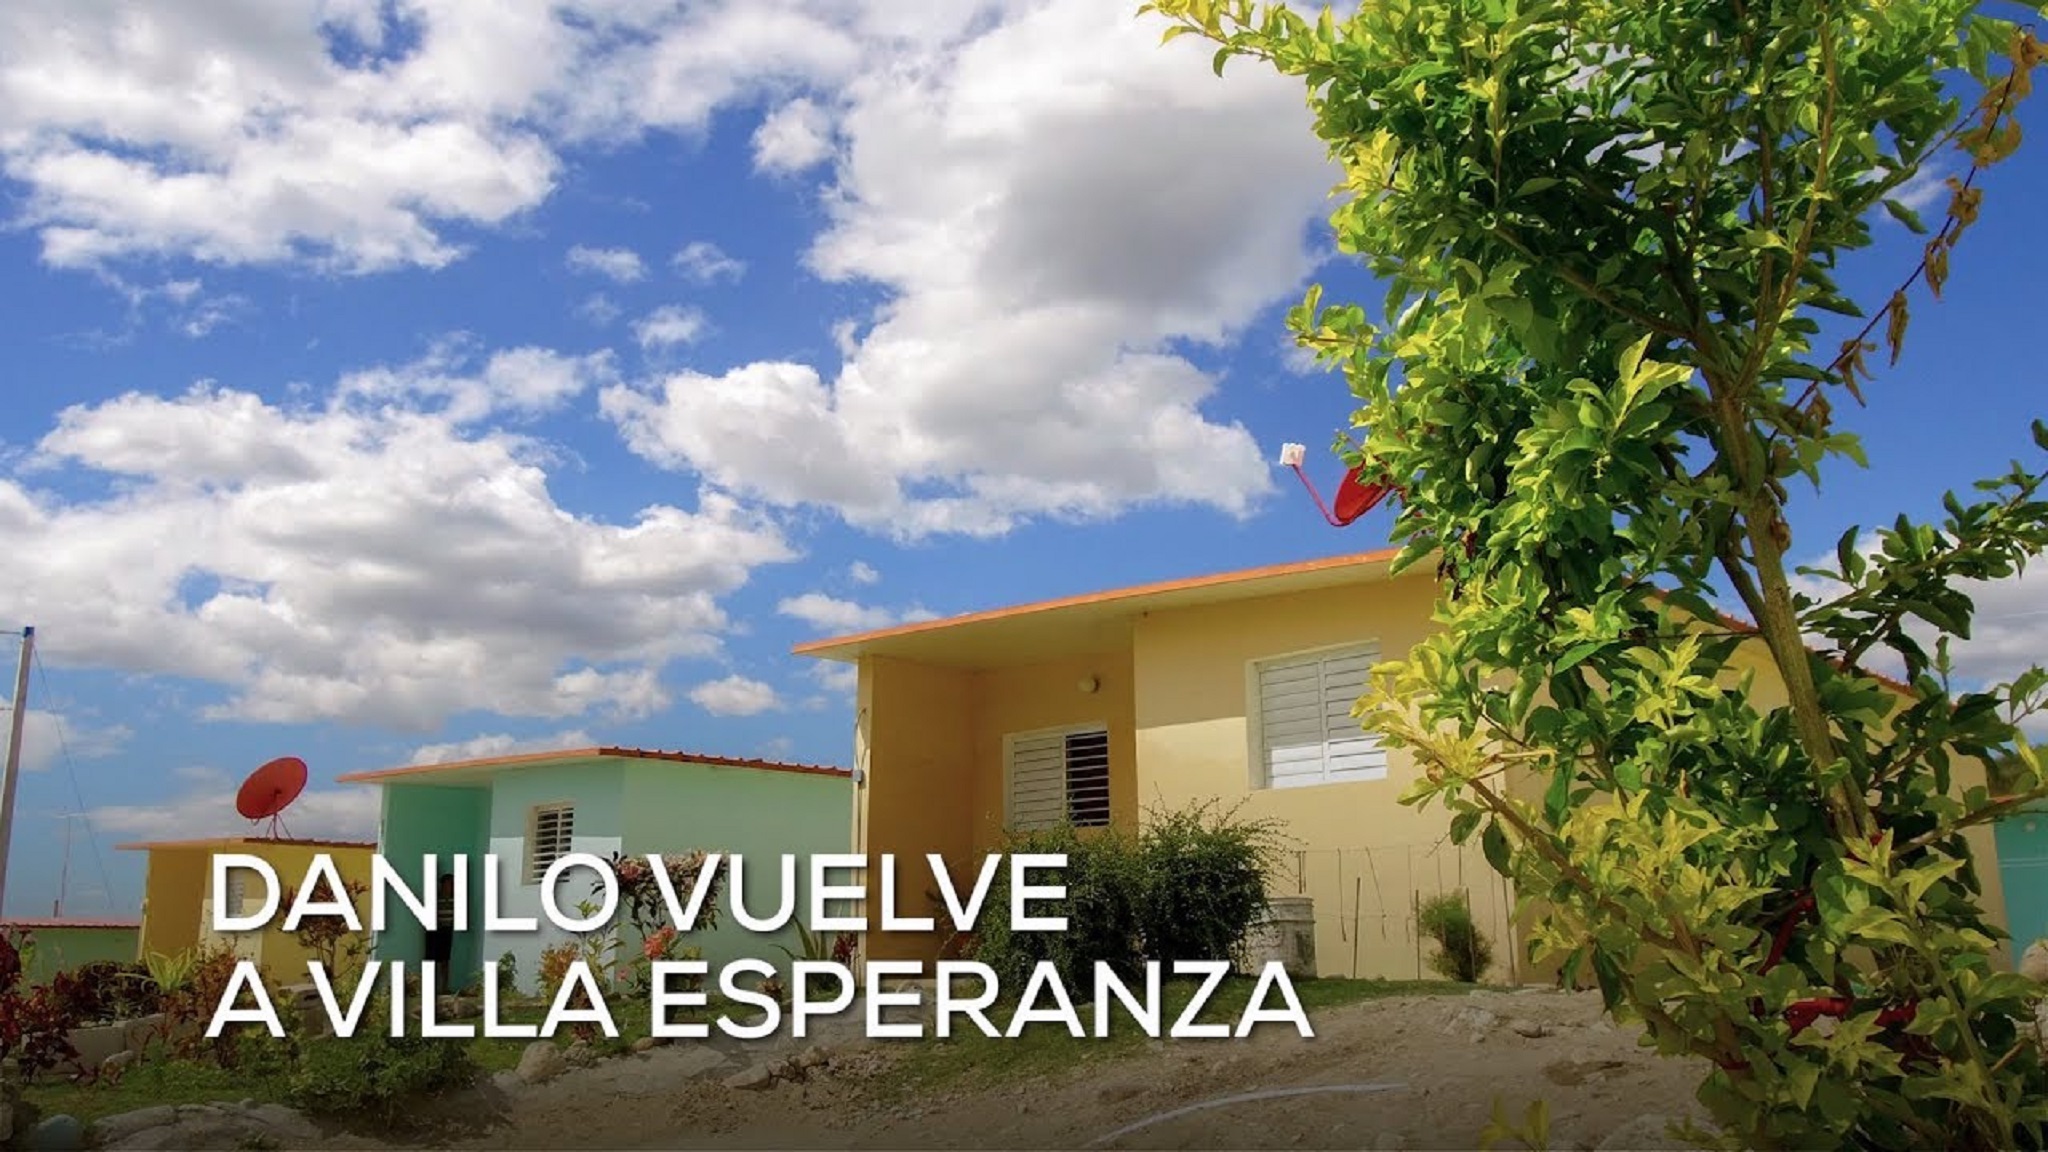 REPÚBLICA DOMINICANA: Danilo vuelve a Villa Esperanza